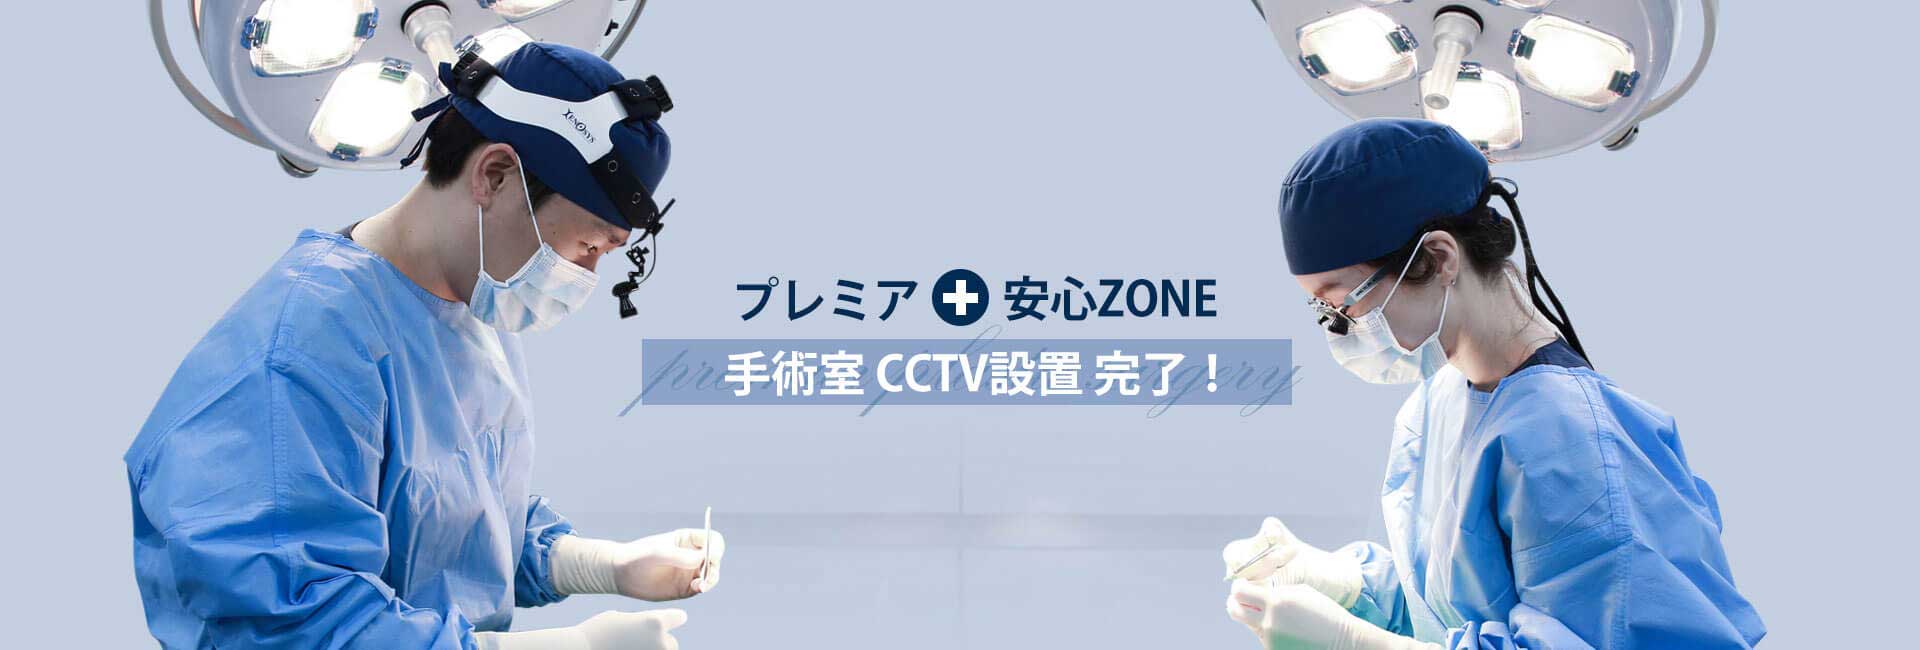 整形外科CCTV